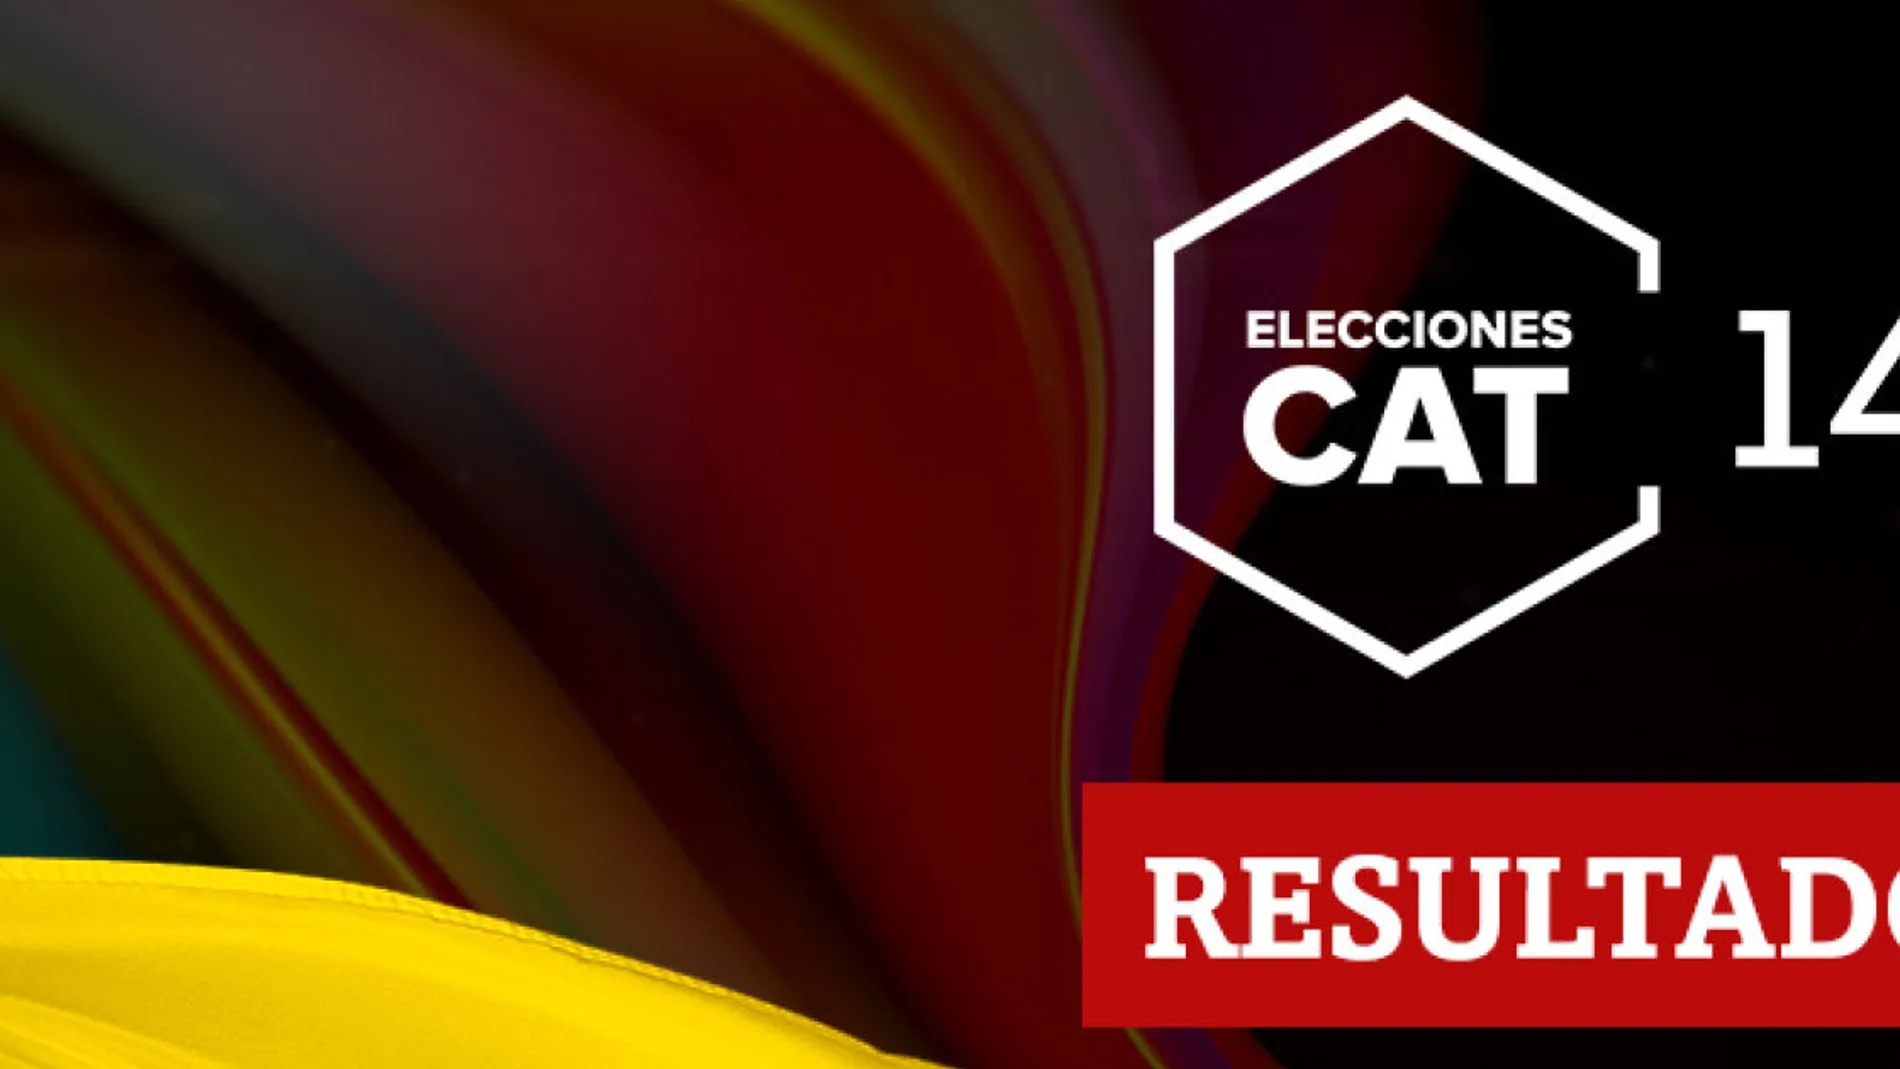 Resultados en Sant Quirze Safaja de las elecciones catalanas del 14F 2021